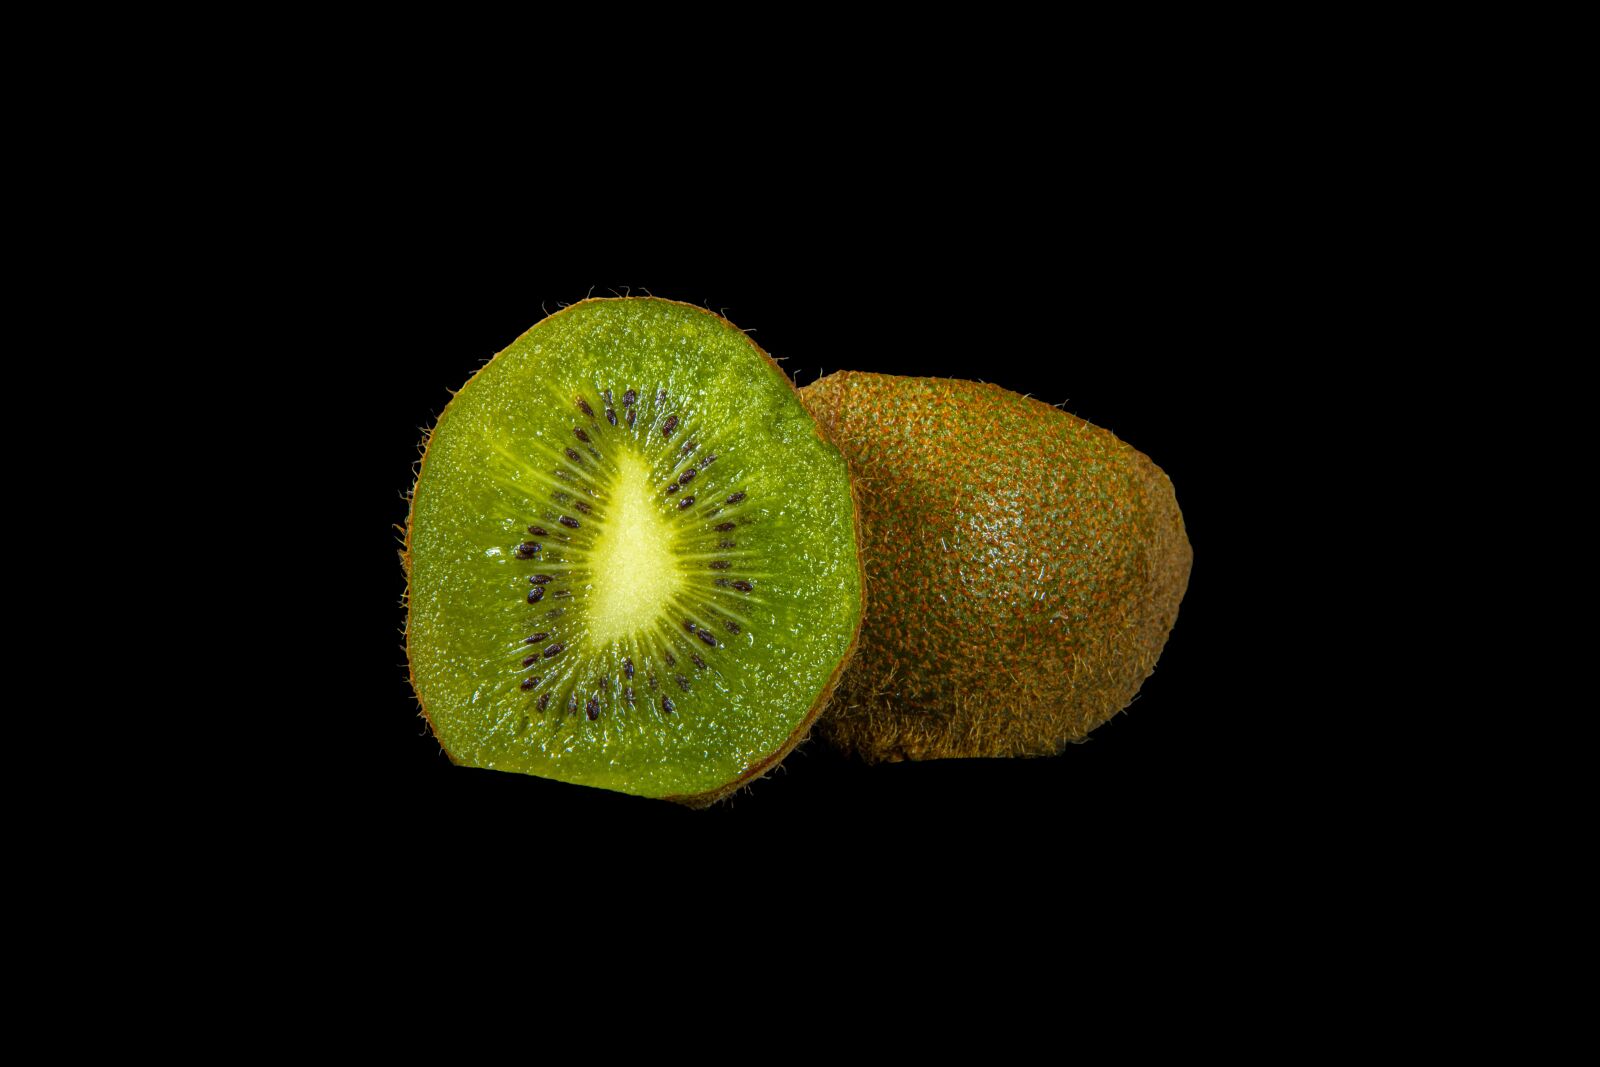 Sigma 70-200mm F2.8 EX DG OS HSM sample photo. Kiwi, fruit, eat photography